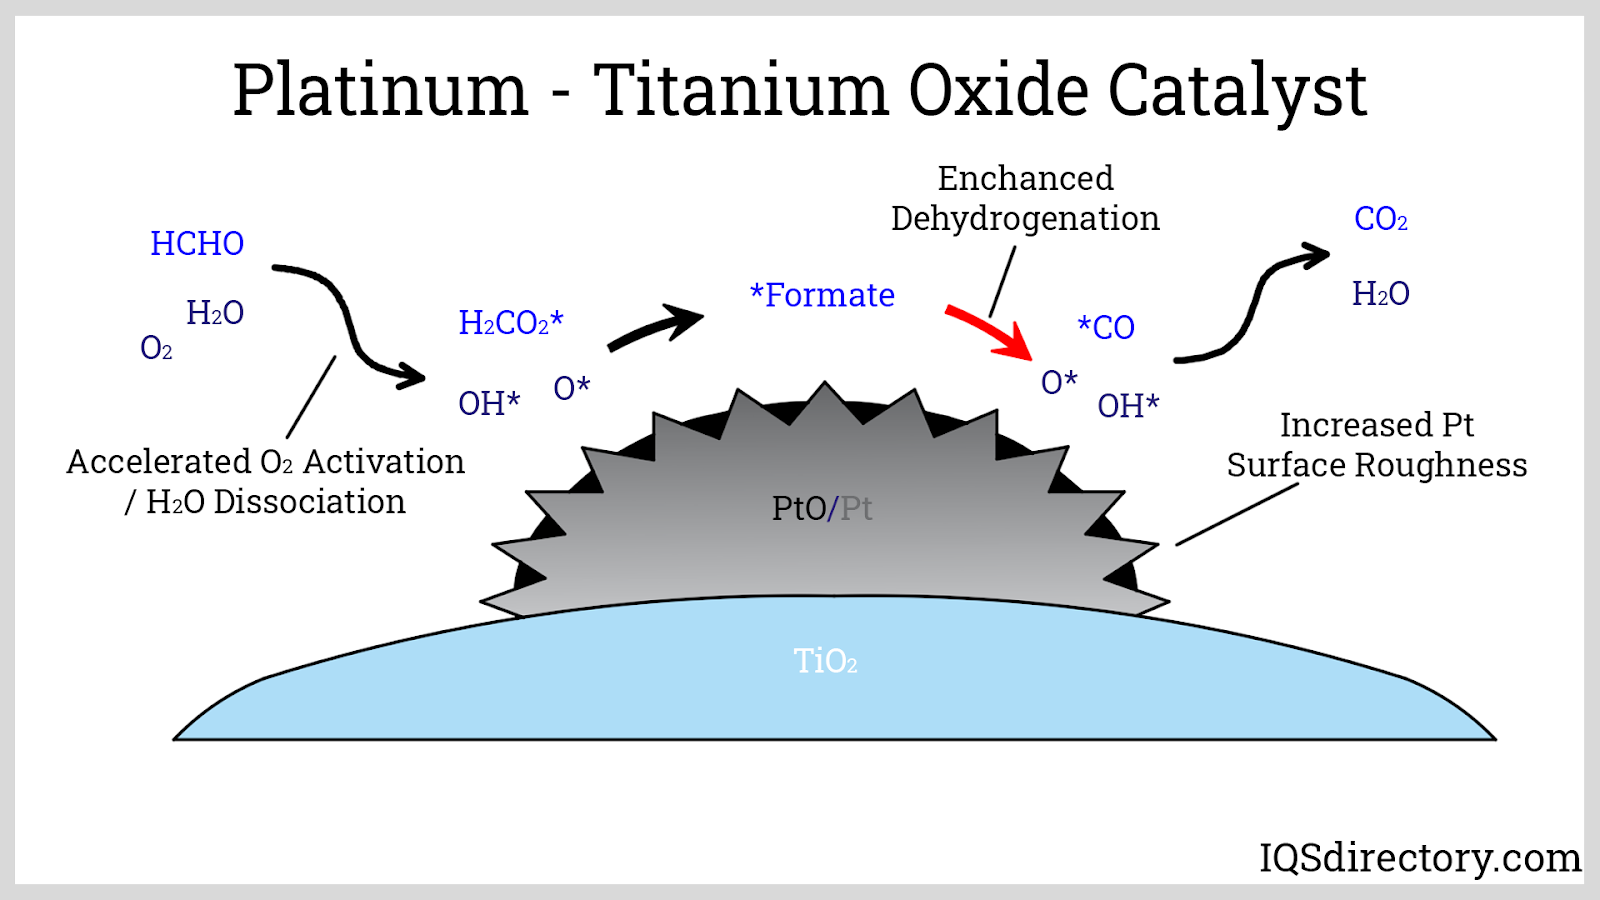 Platinum - Titanium Oxide Catalyst